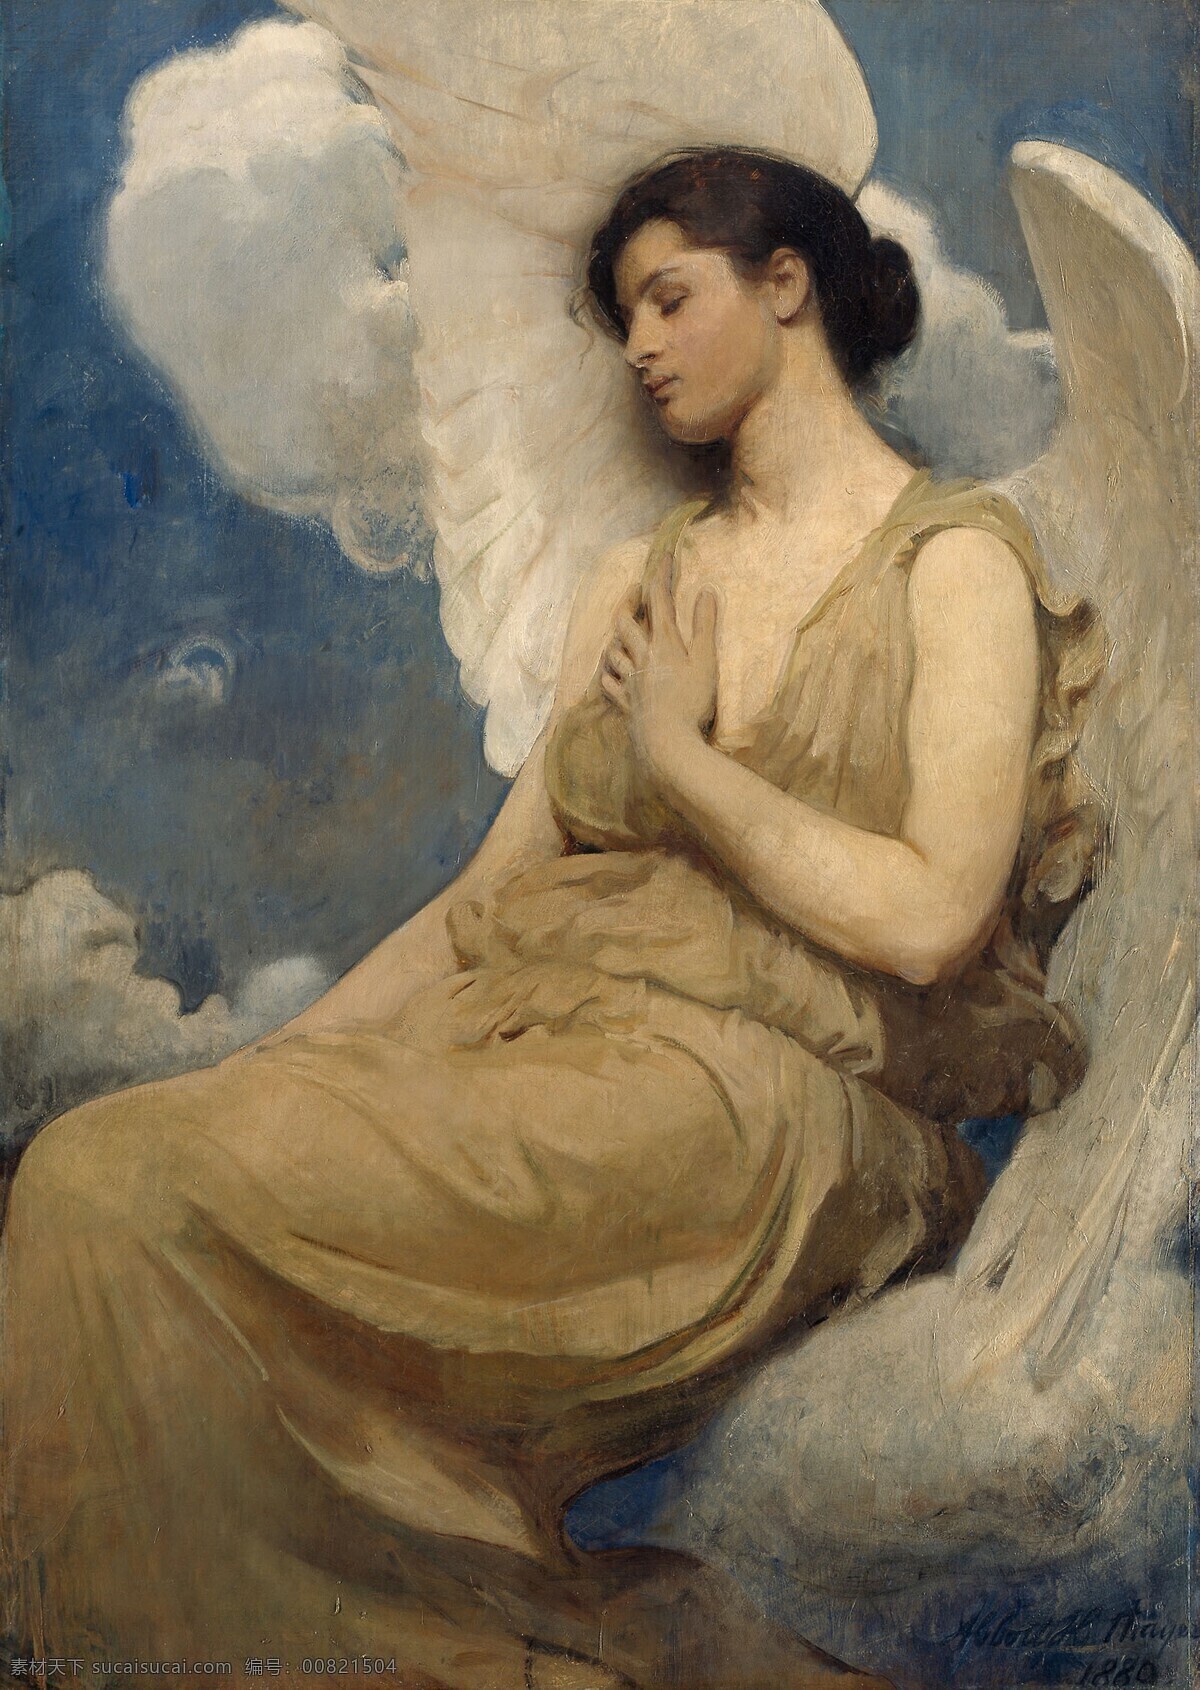 雅 培 翰 德逊 泰勒 油画 天使的油画 人物油画 古典油画 美女油画 文化艺术 美术绘画